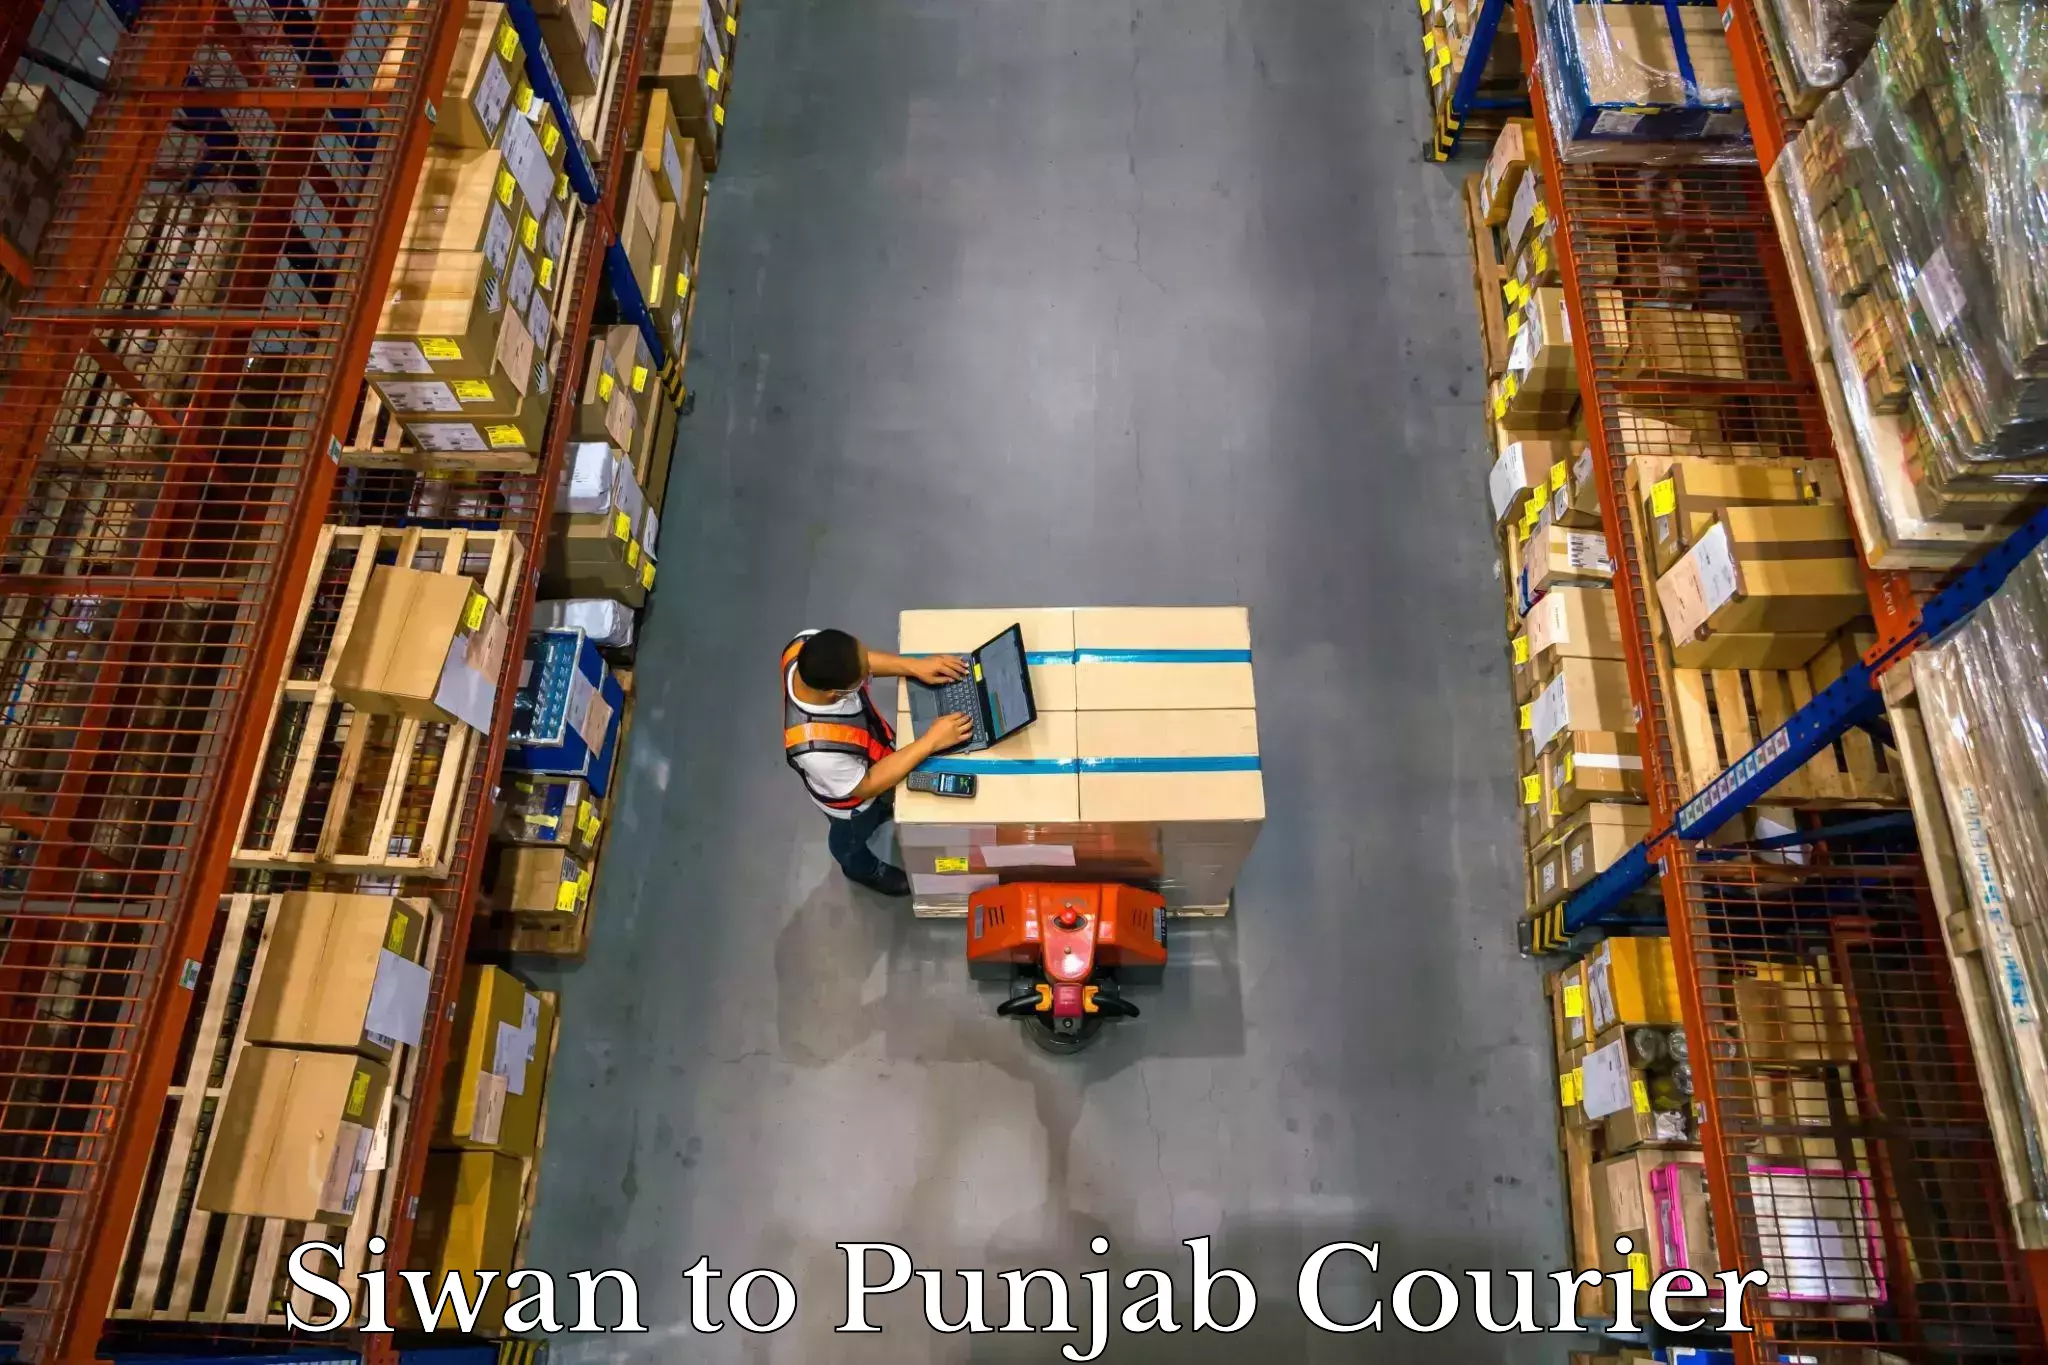 Electronic items luggage shipping Siwan to Central University of Punjab Bathinda